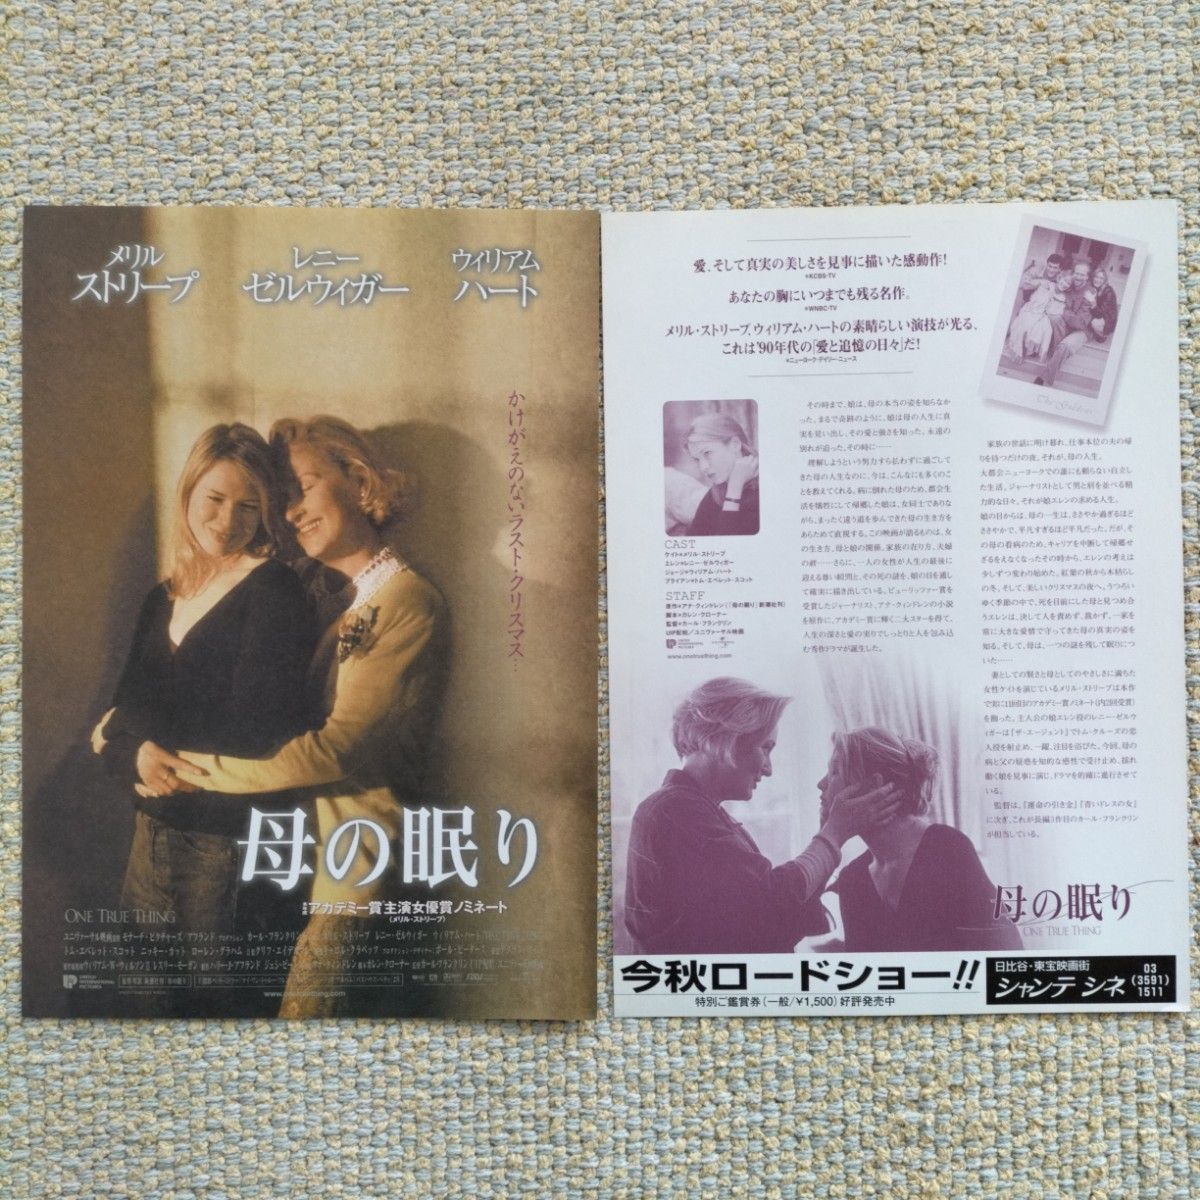 レニー・ゼルウィガー出演映画のポスター、チラシ、ポストカード